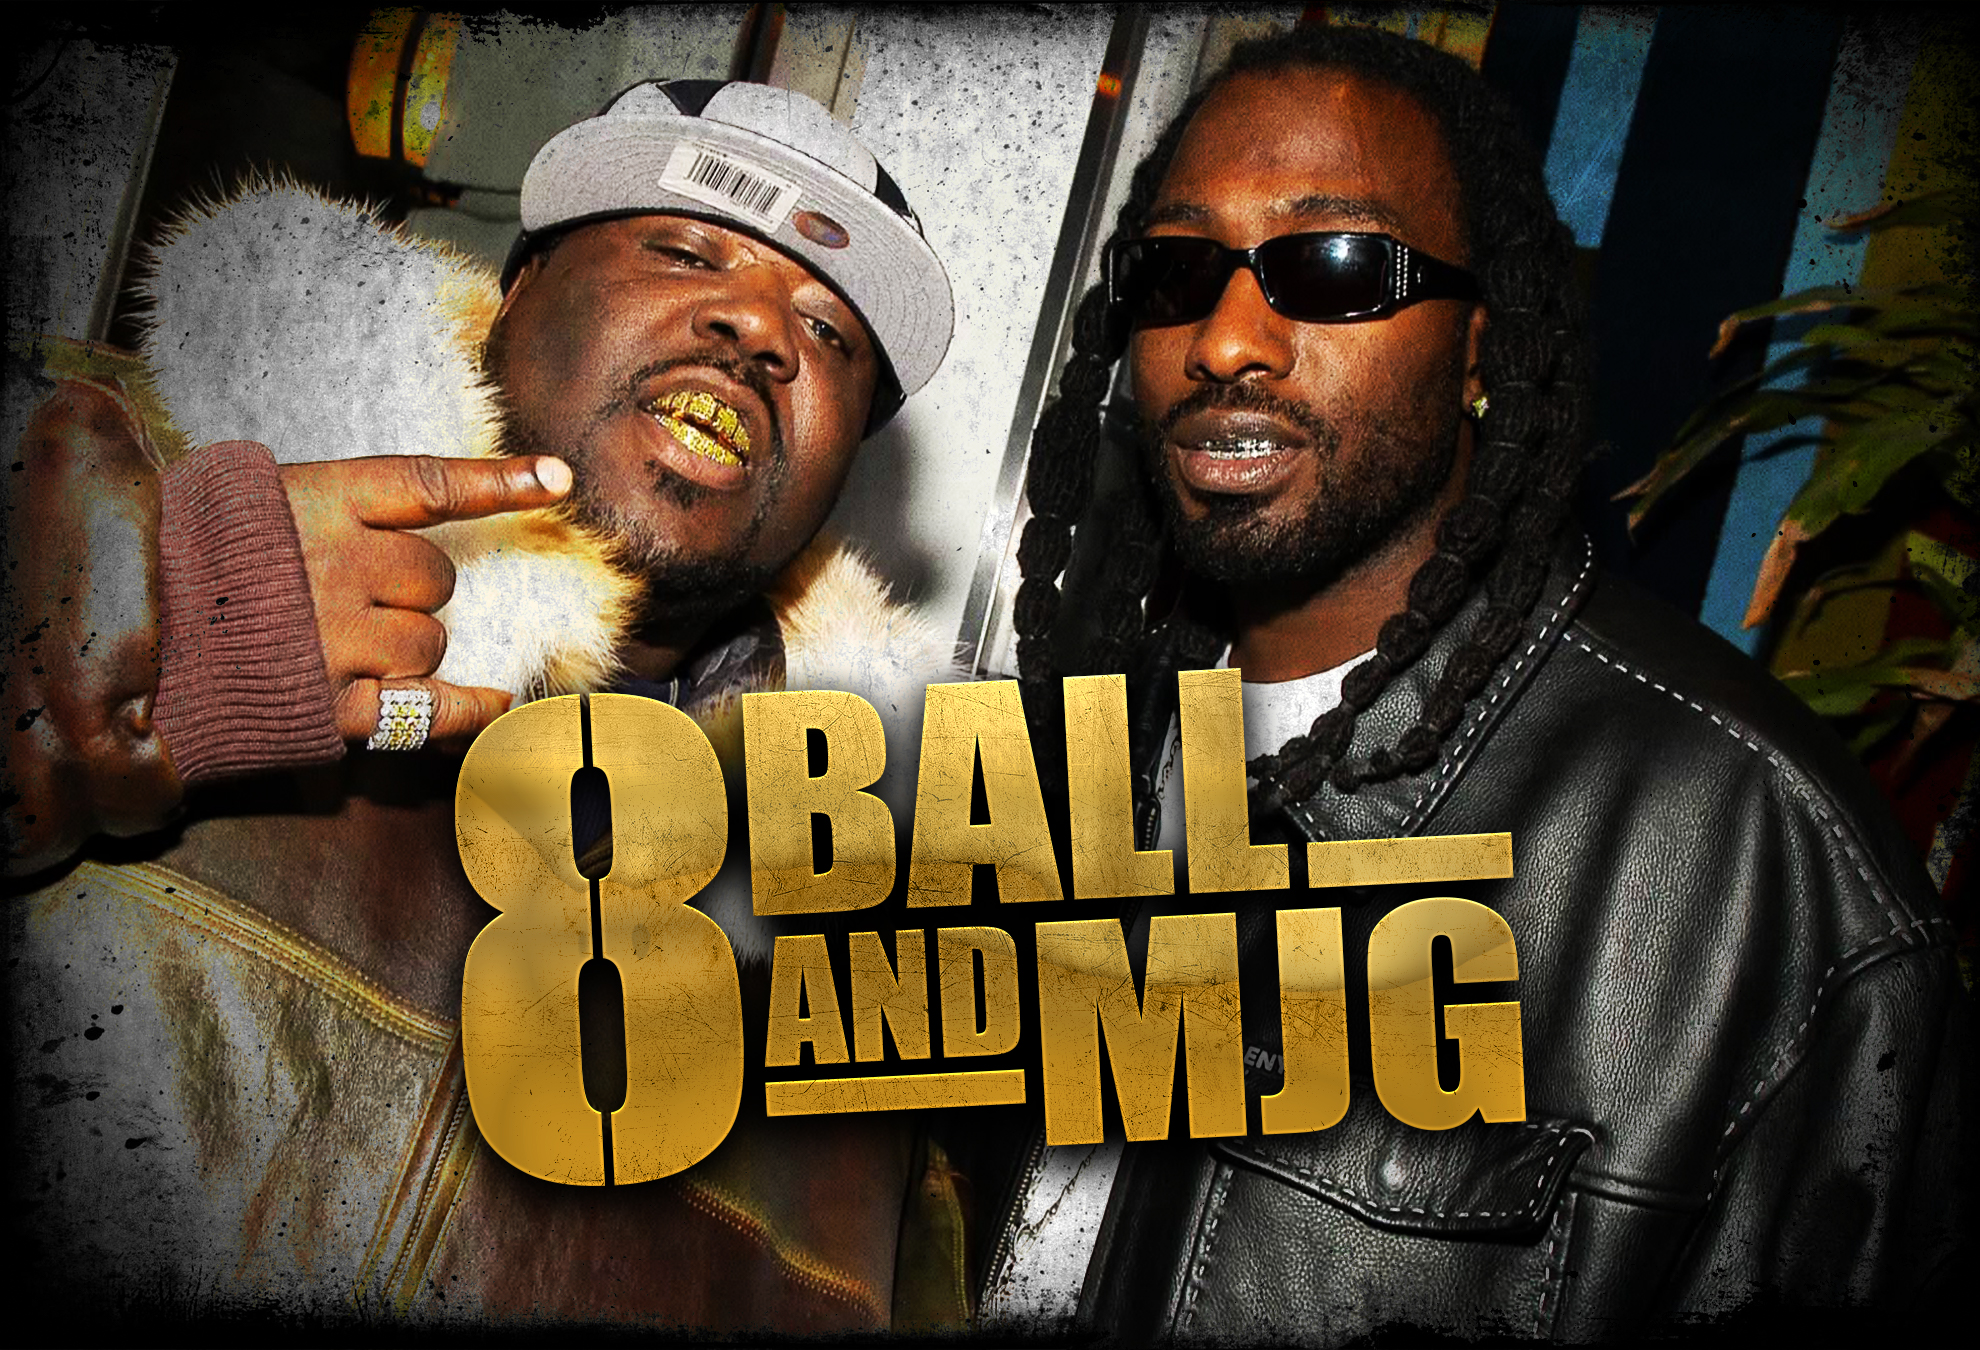 8 Ball and MJG